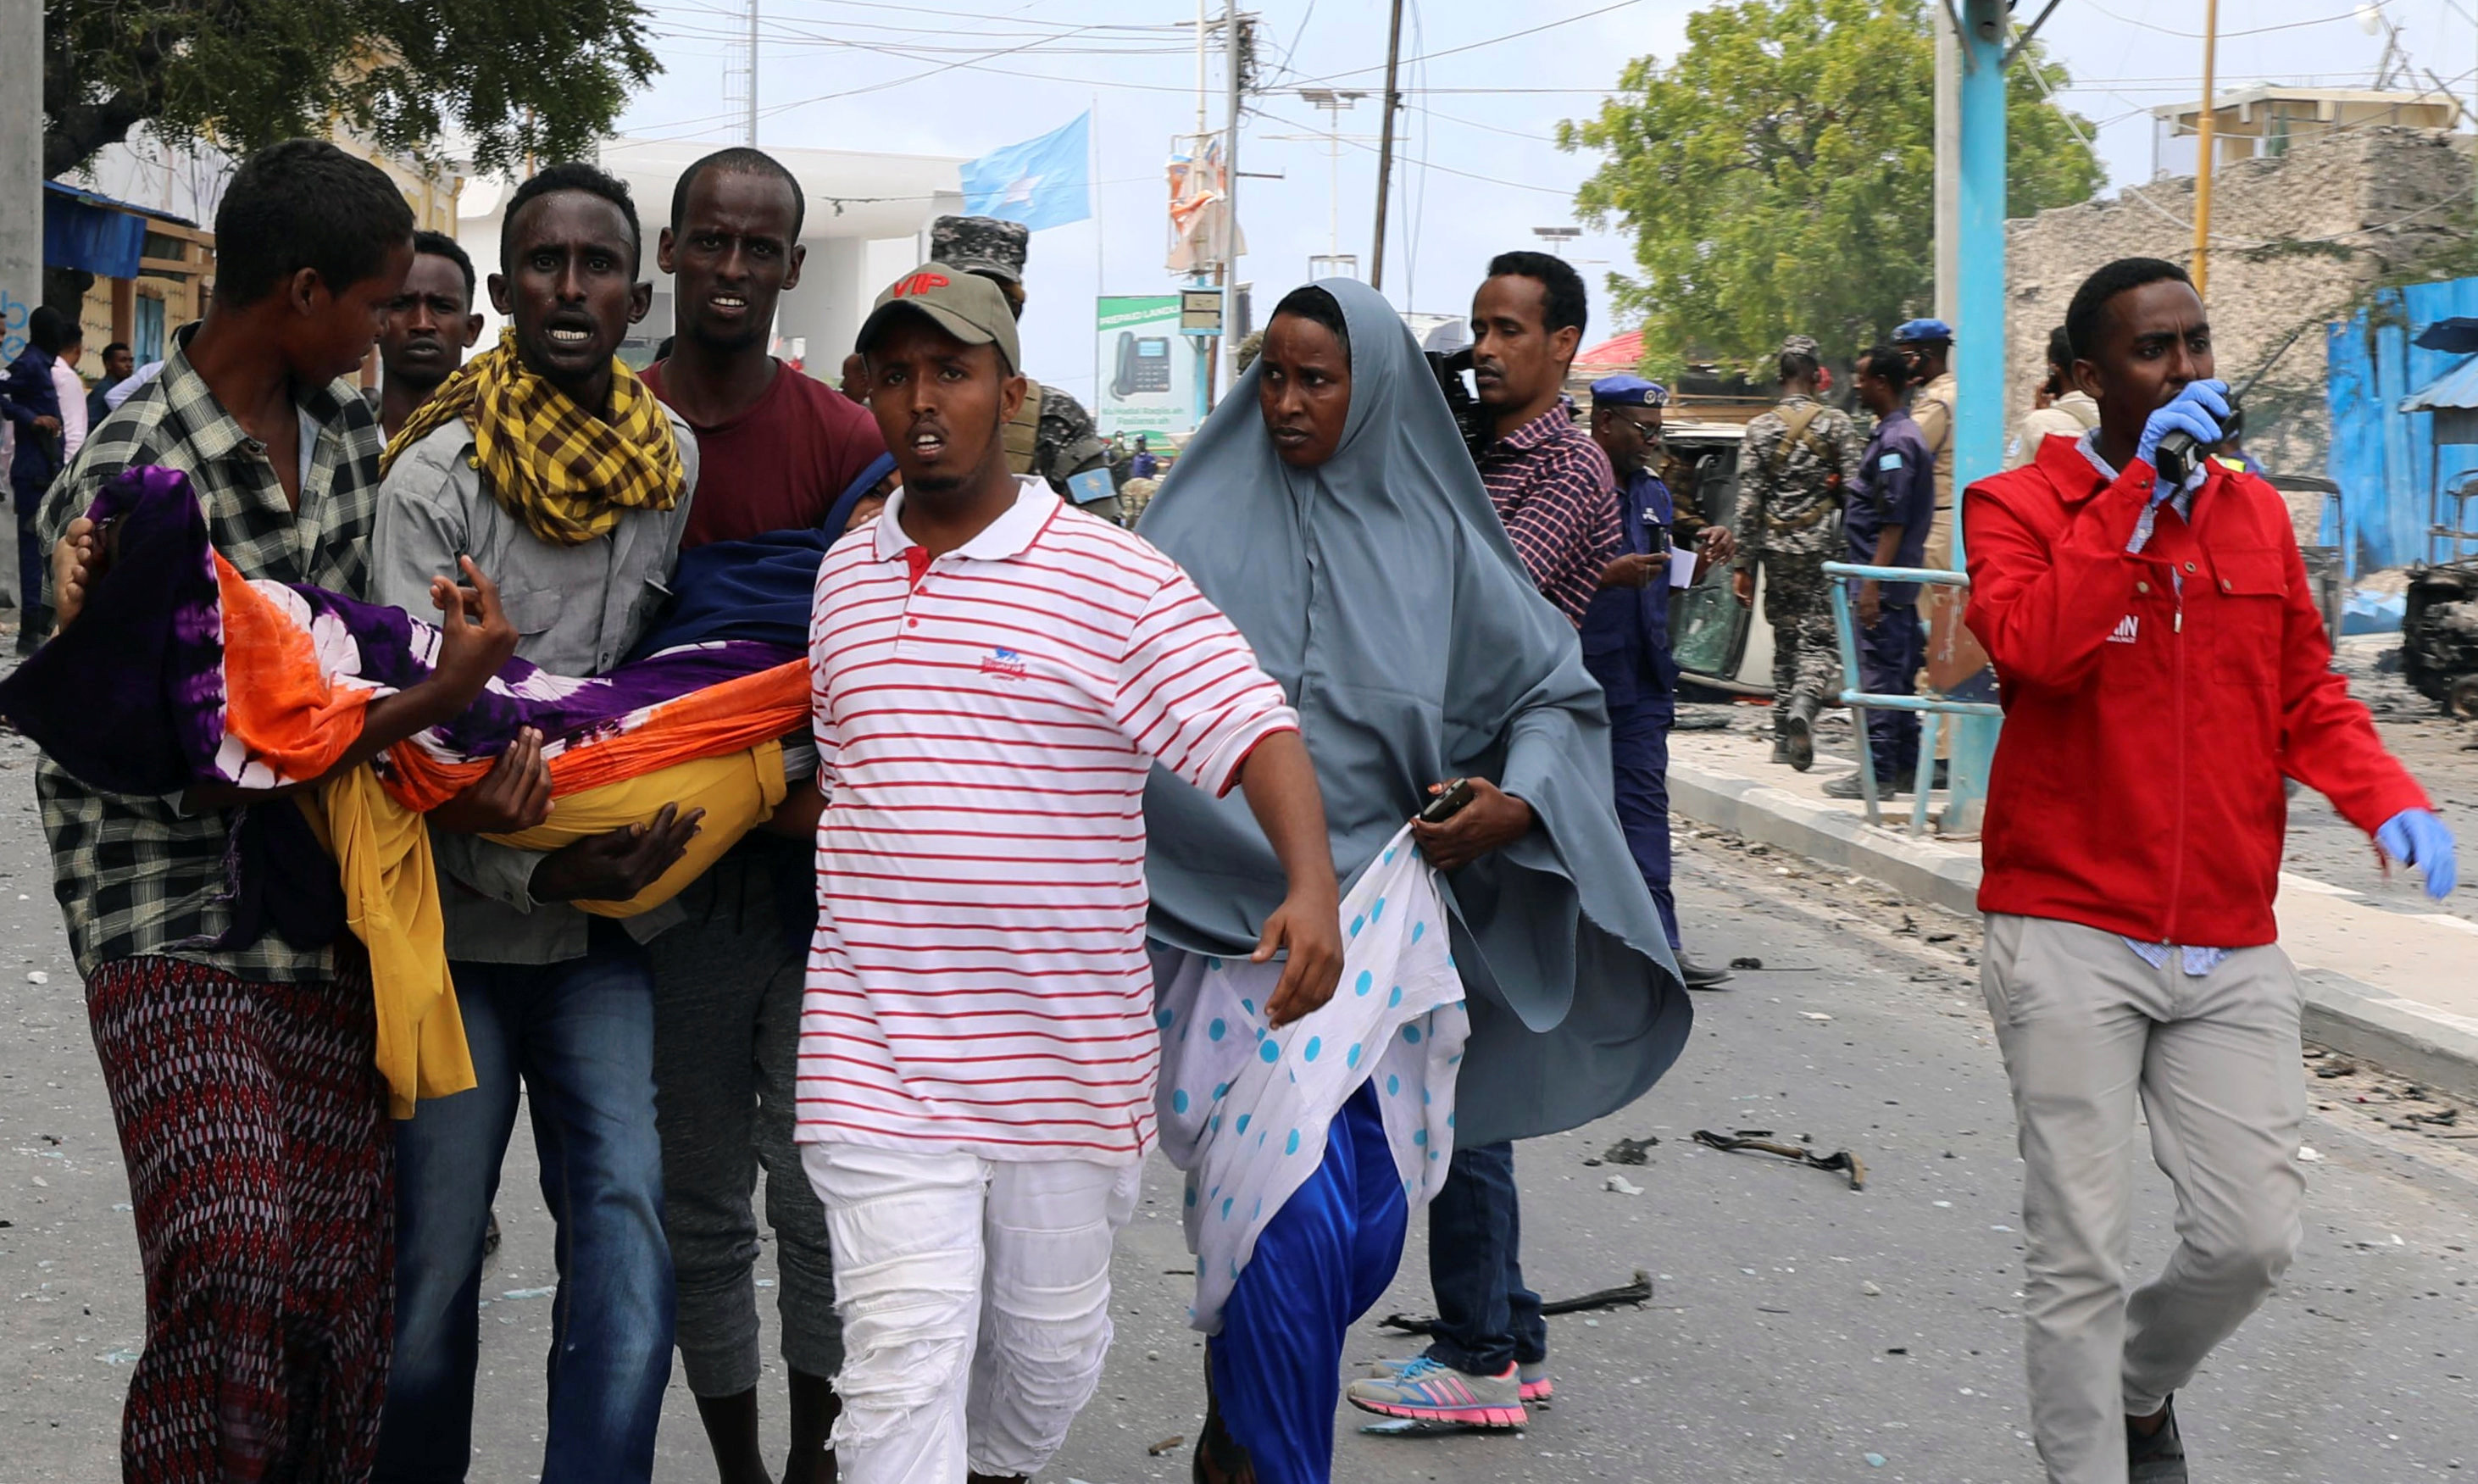 سقوط ضحايا فى انفجار بالصومال